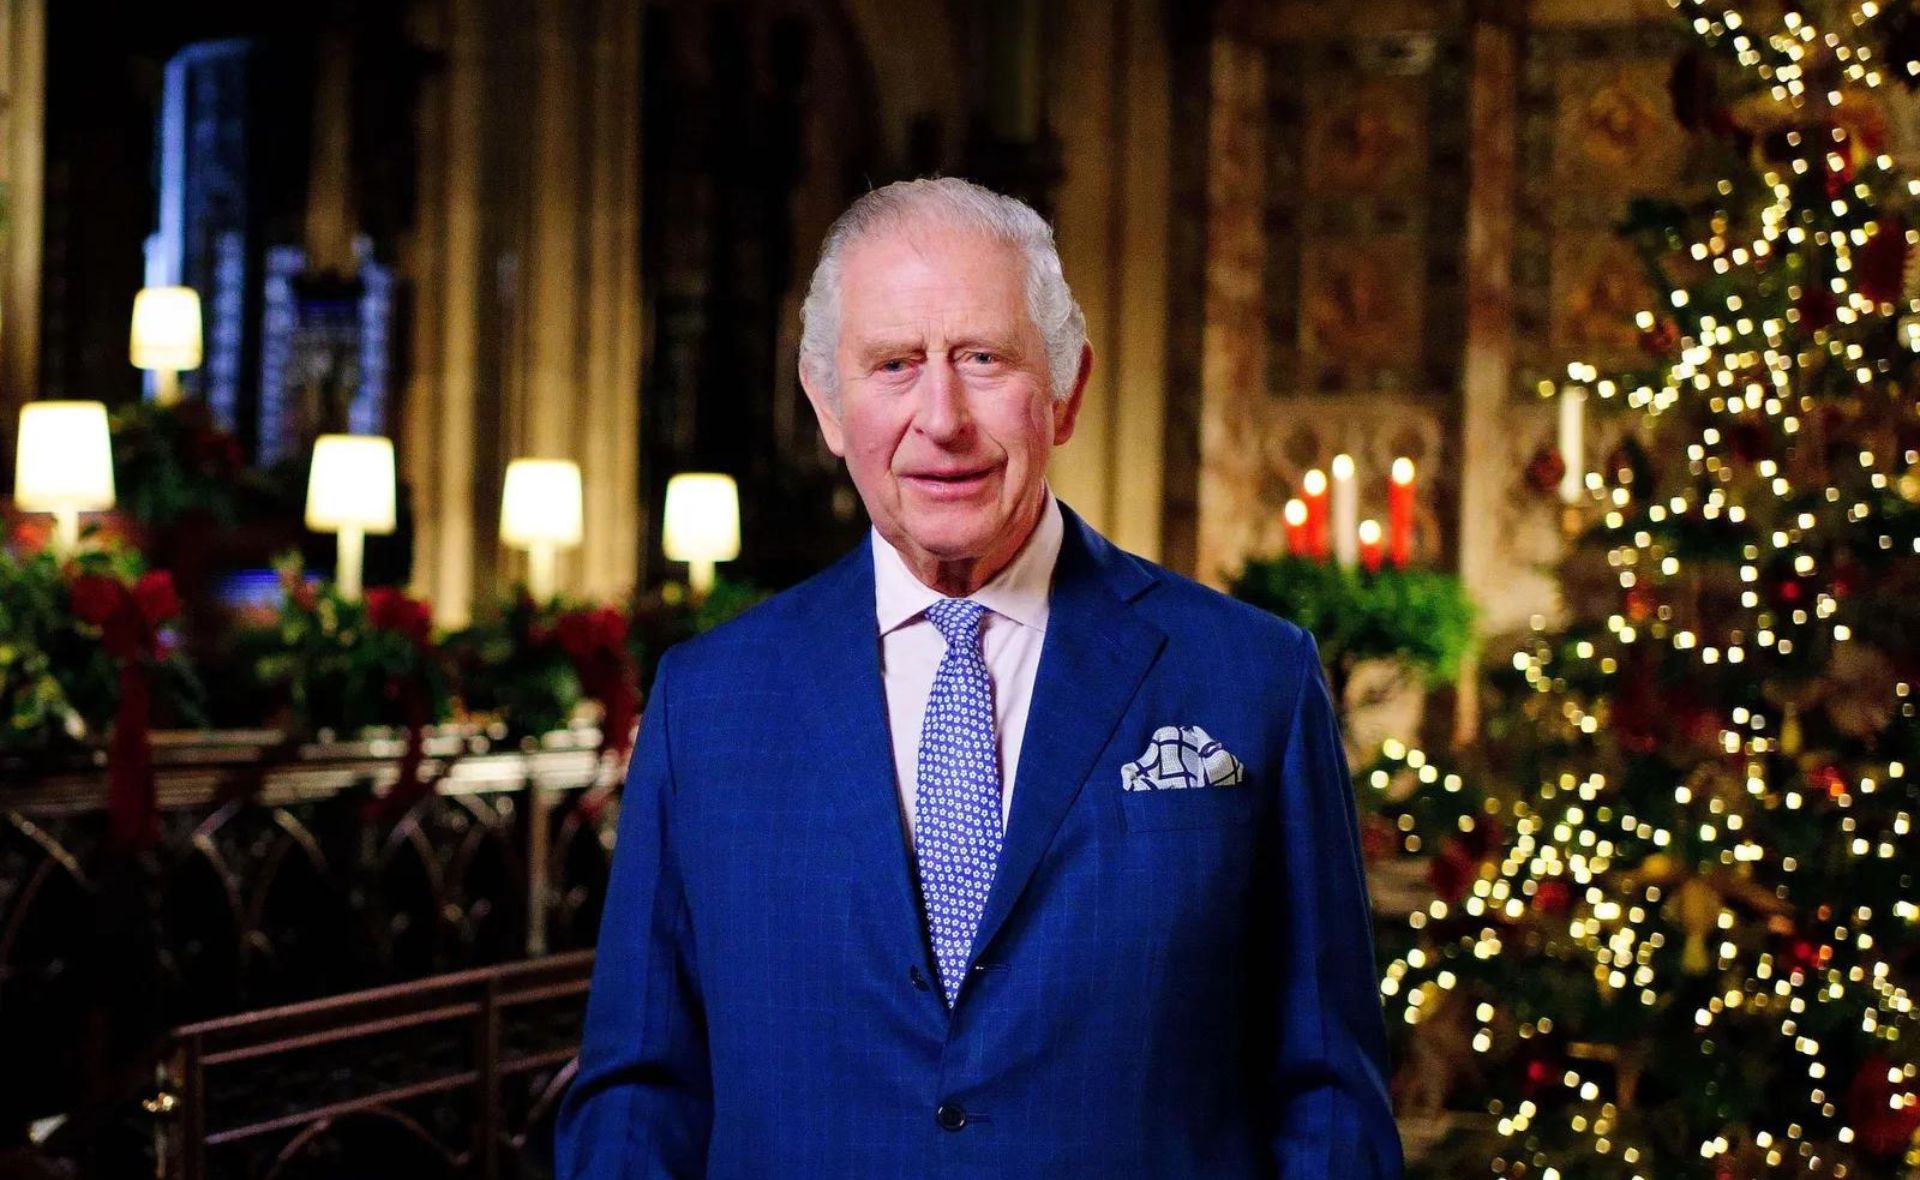 King Charles at Christmas